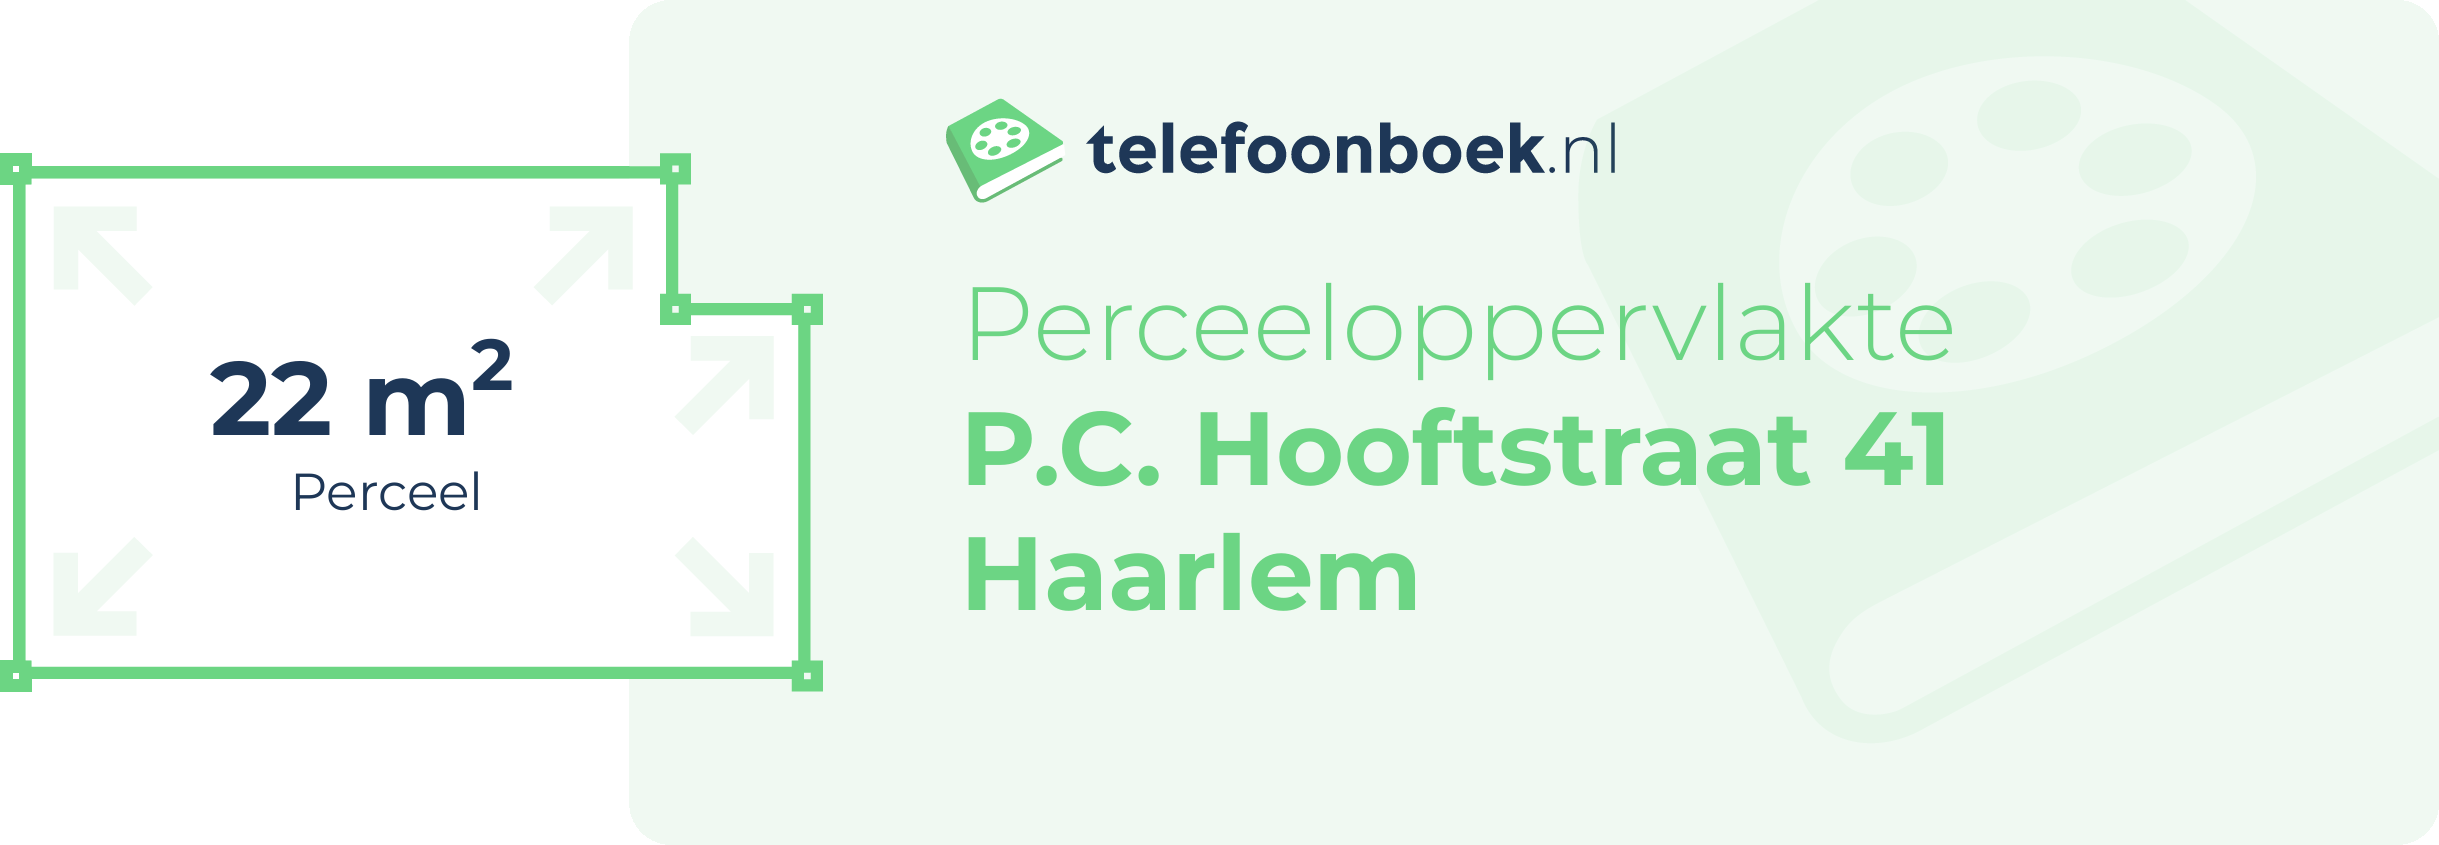 Perceeloppervlakte P.C. Hooftstraat 41 Haarlem